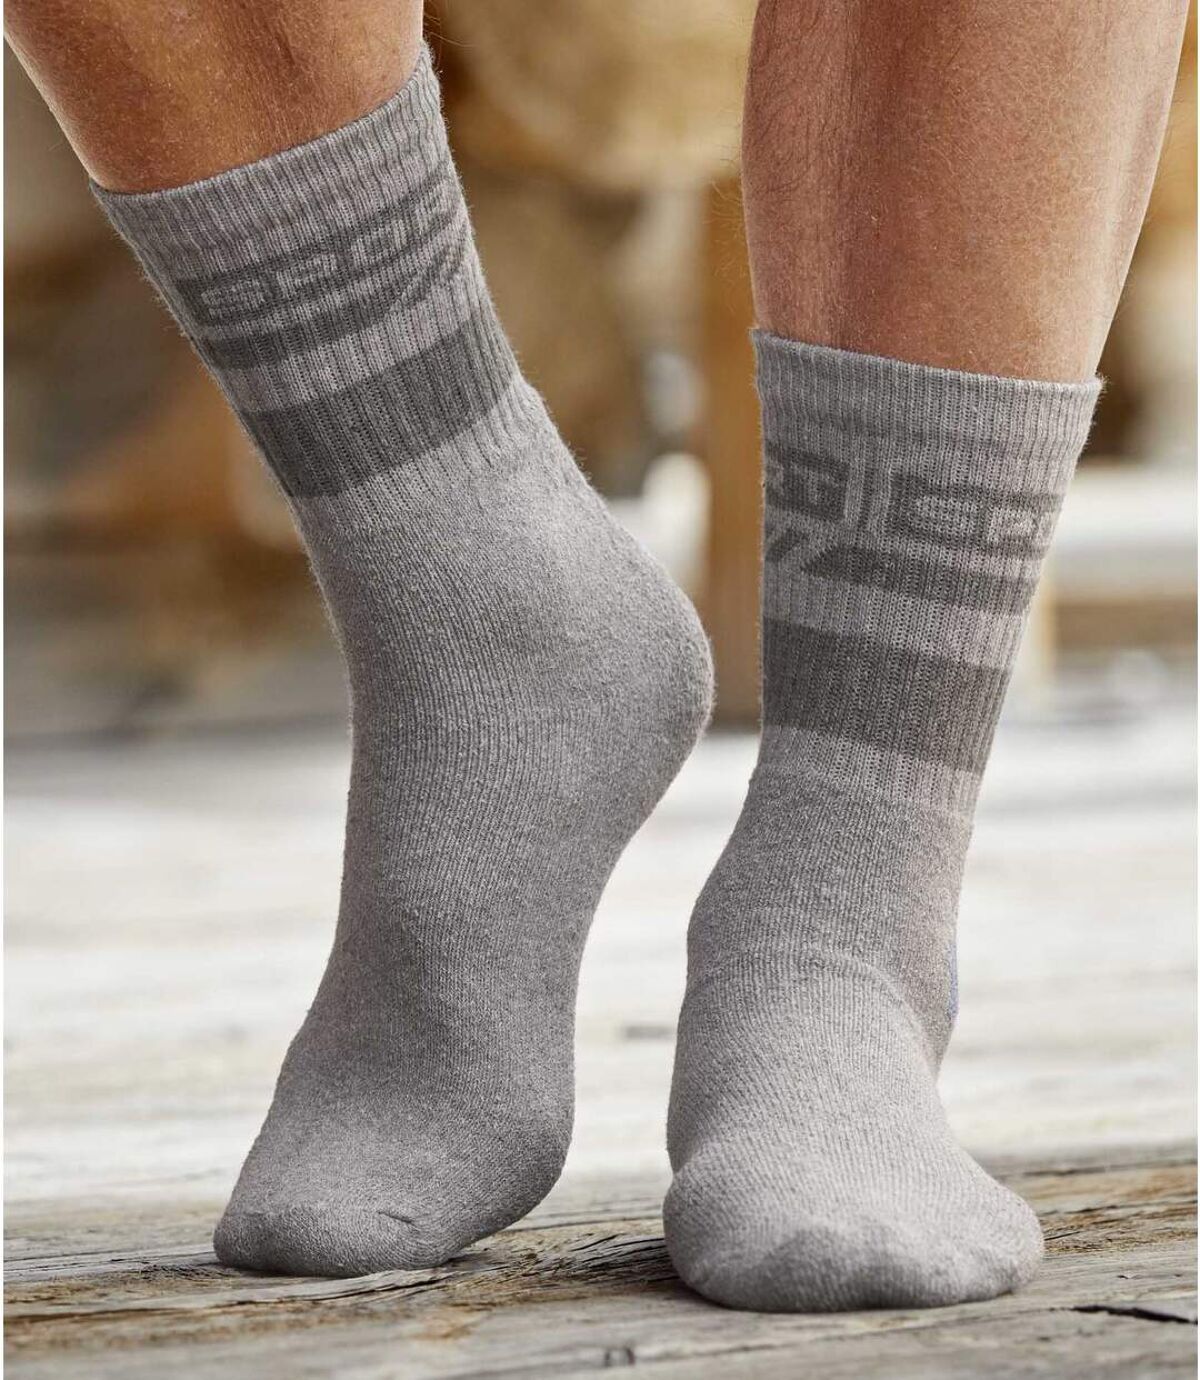 Pack of 4 Pairs of Men's Sports Socks - Burgundy Grey Indigo Atlas For Men